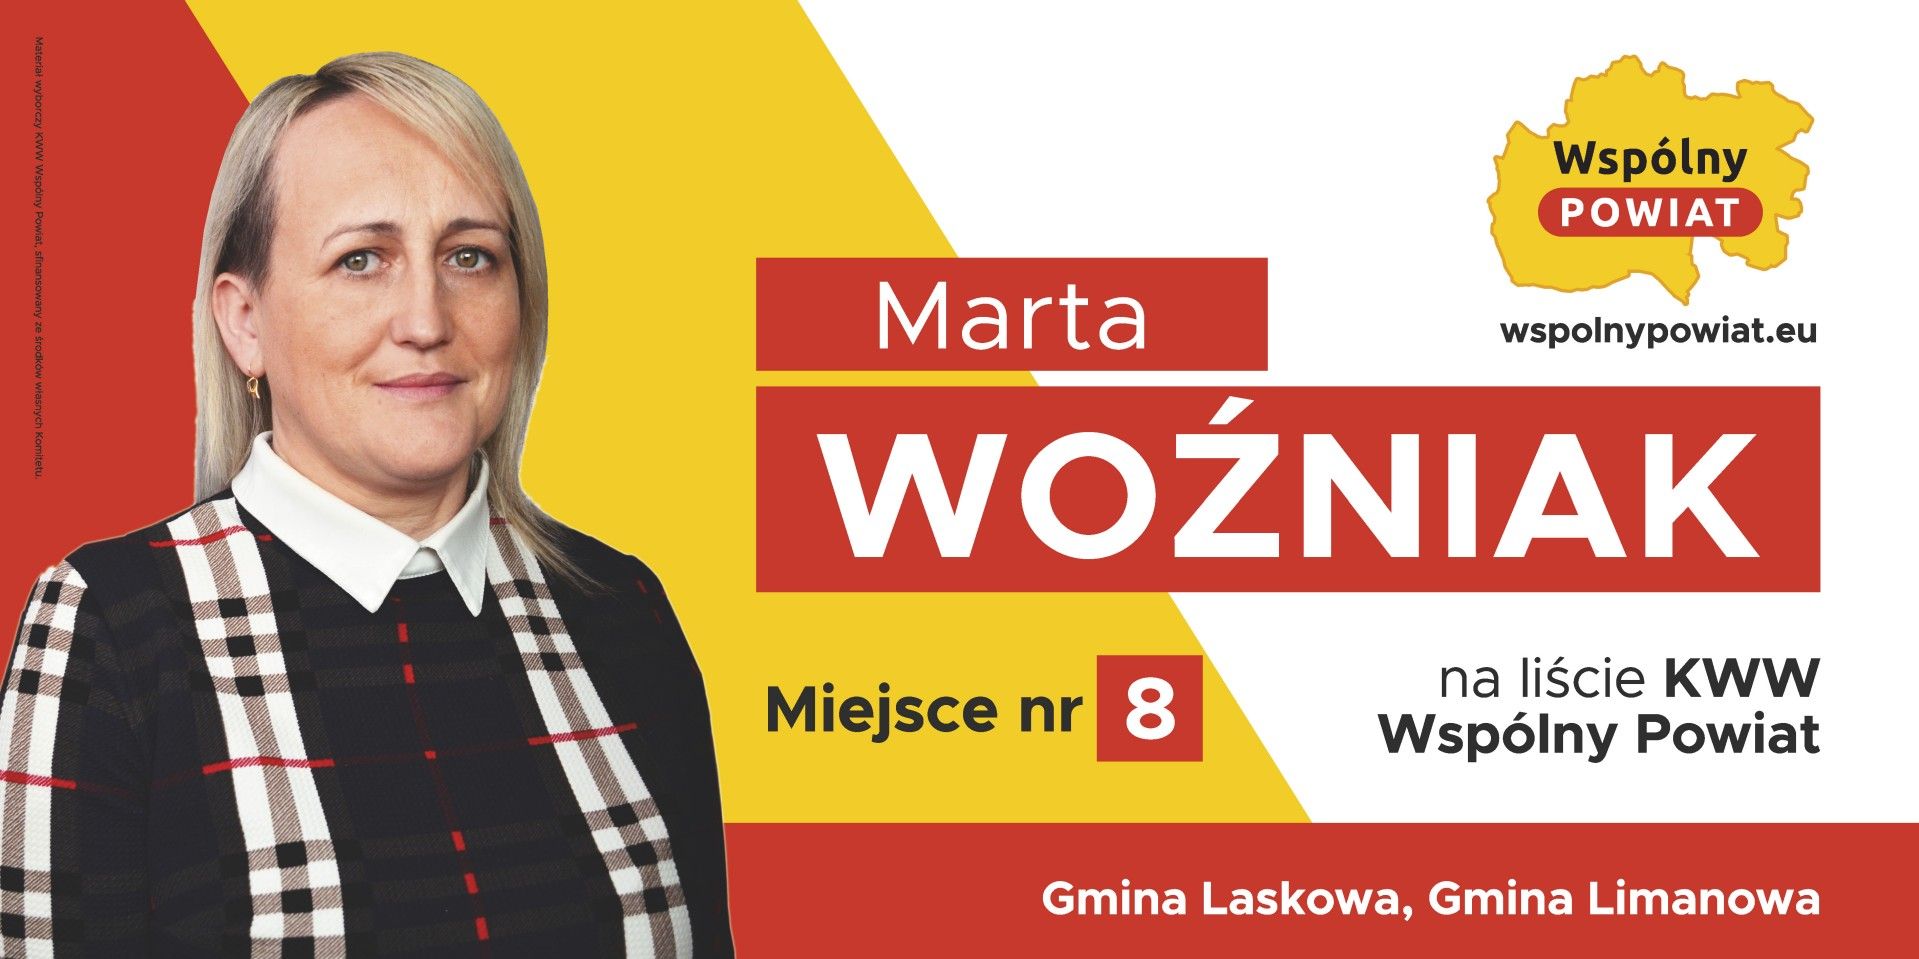 Marta Woźniak